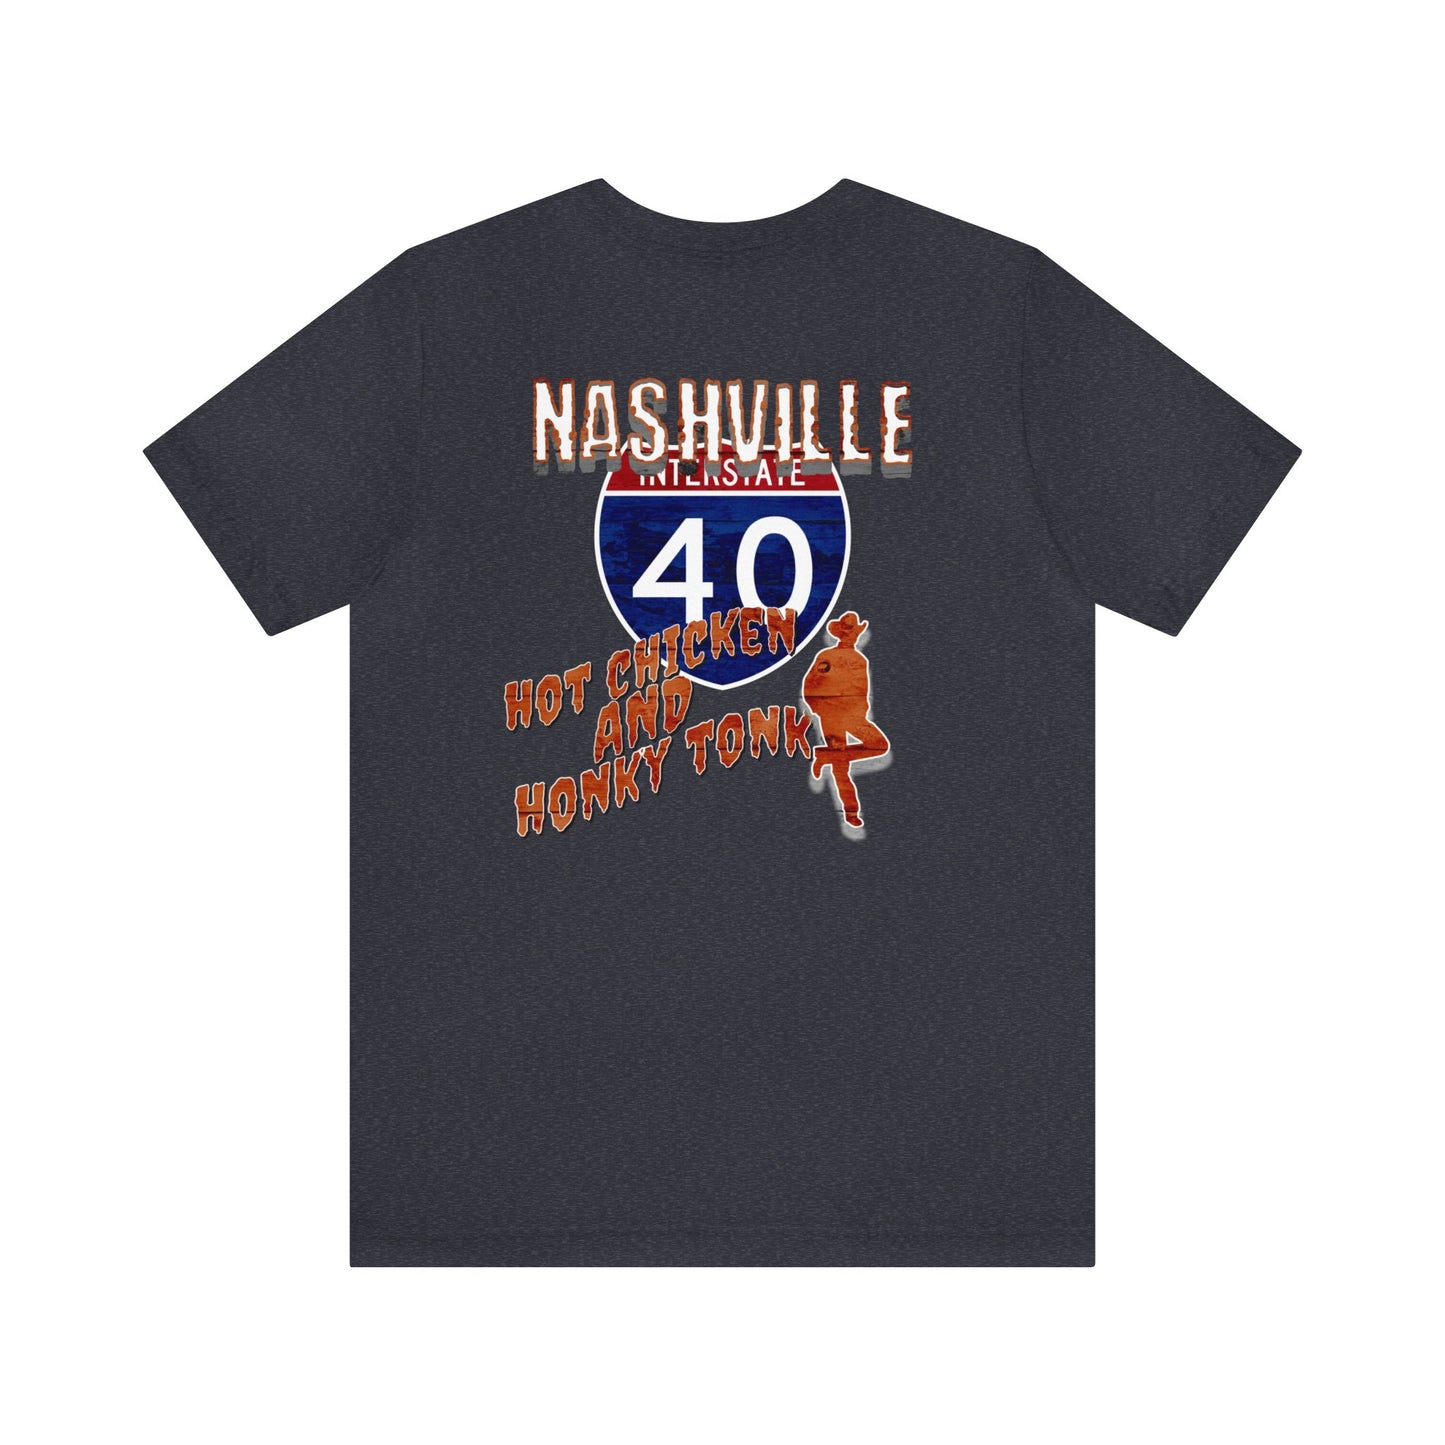 Nashville,TN , I-40, Unisex Jersey Short Sleeve Tee